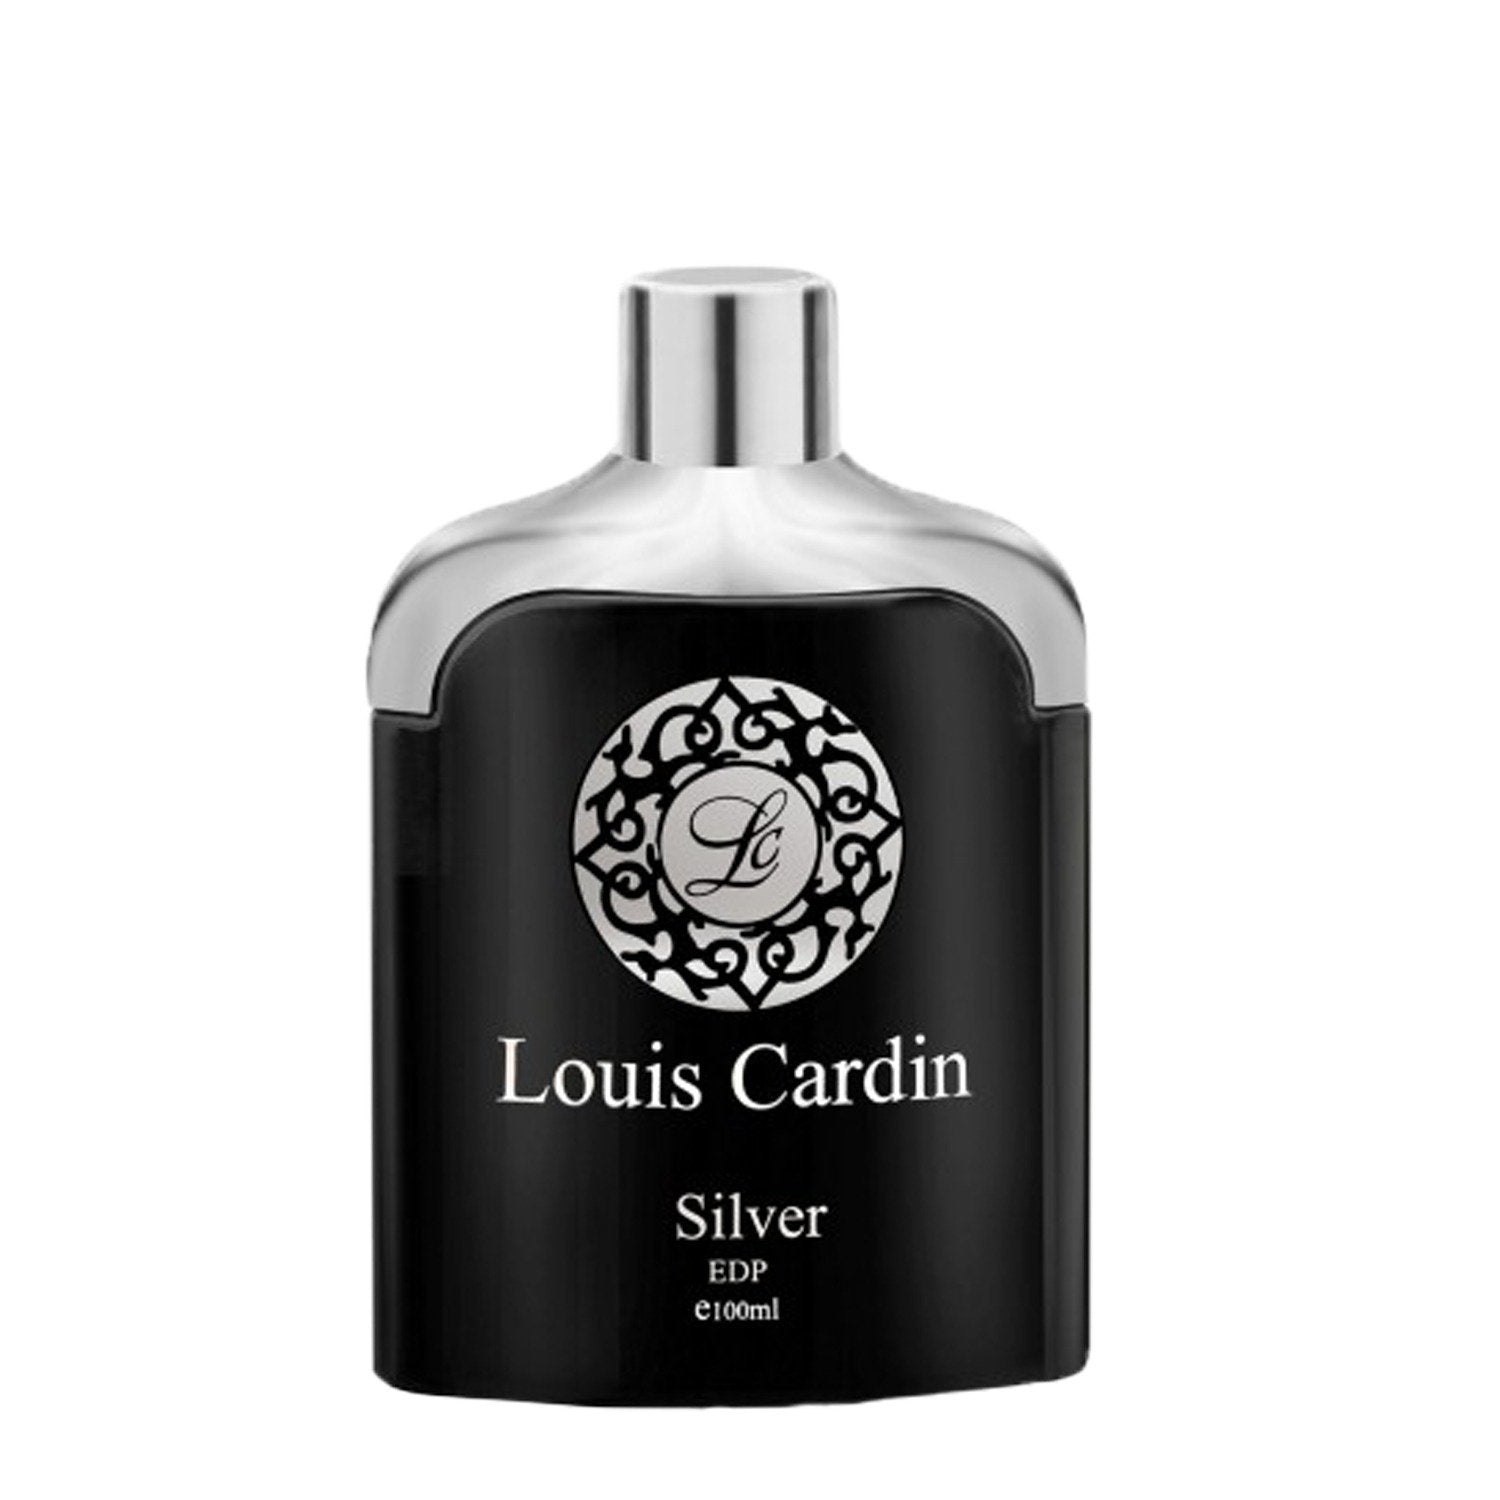 Louis Cardin Sacred Eau De Parfum For Men and Women For Parties